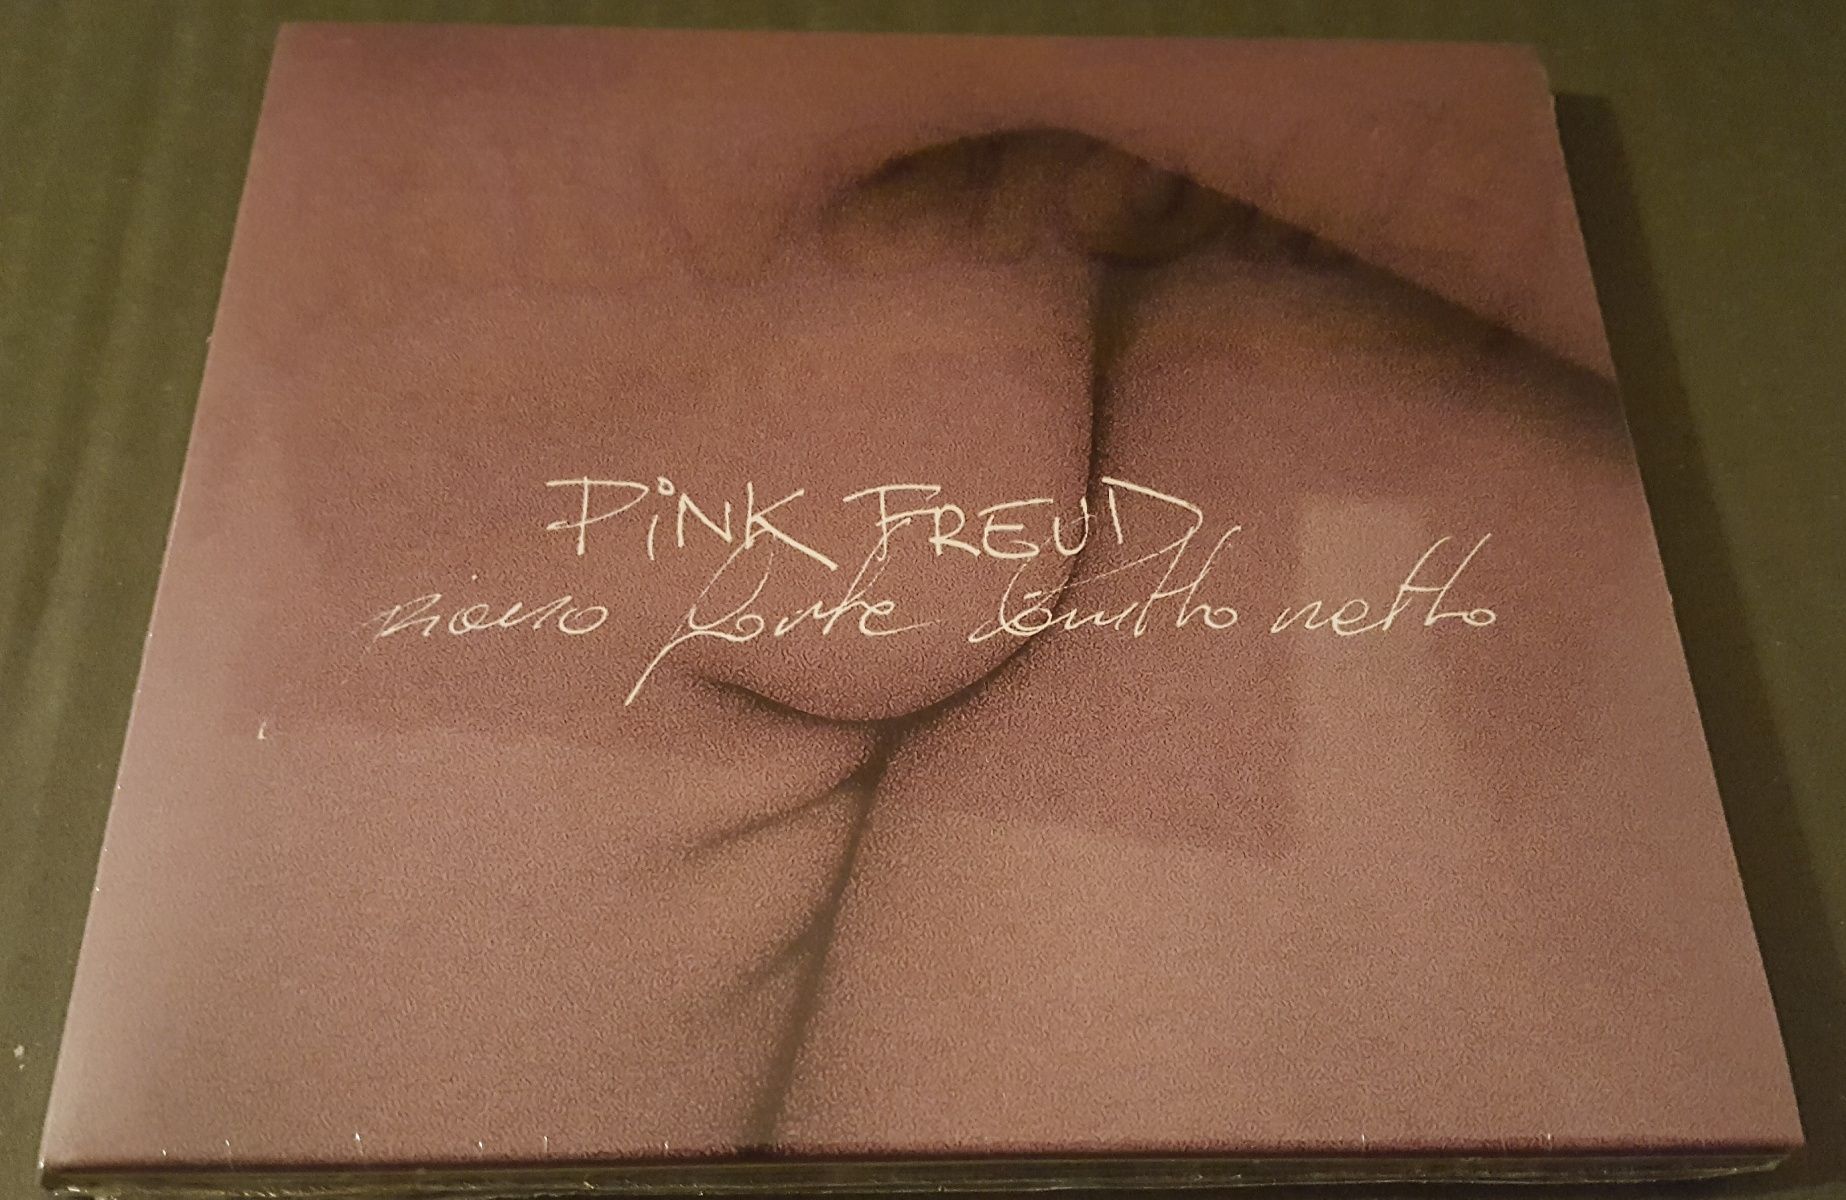 Pink Freud Piano forte brutto netto CD nowa w folii